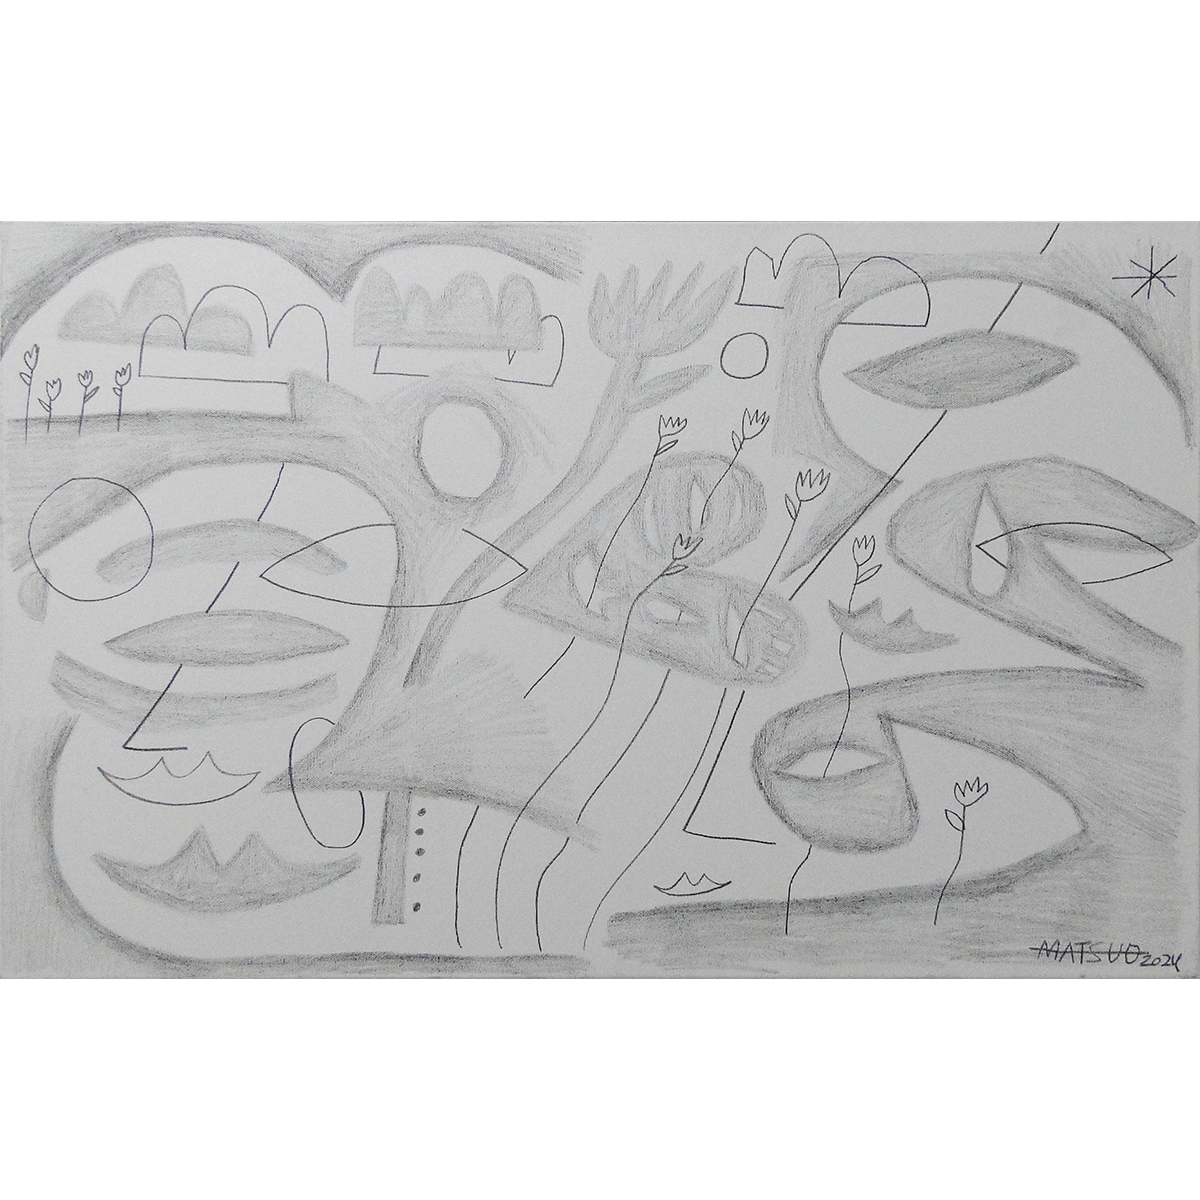 8814 - Pedro Matsuo, 50 x 80 cm, grafite e acrílica sobre tela, ass. dt. 2024 fta